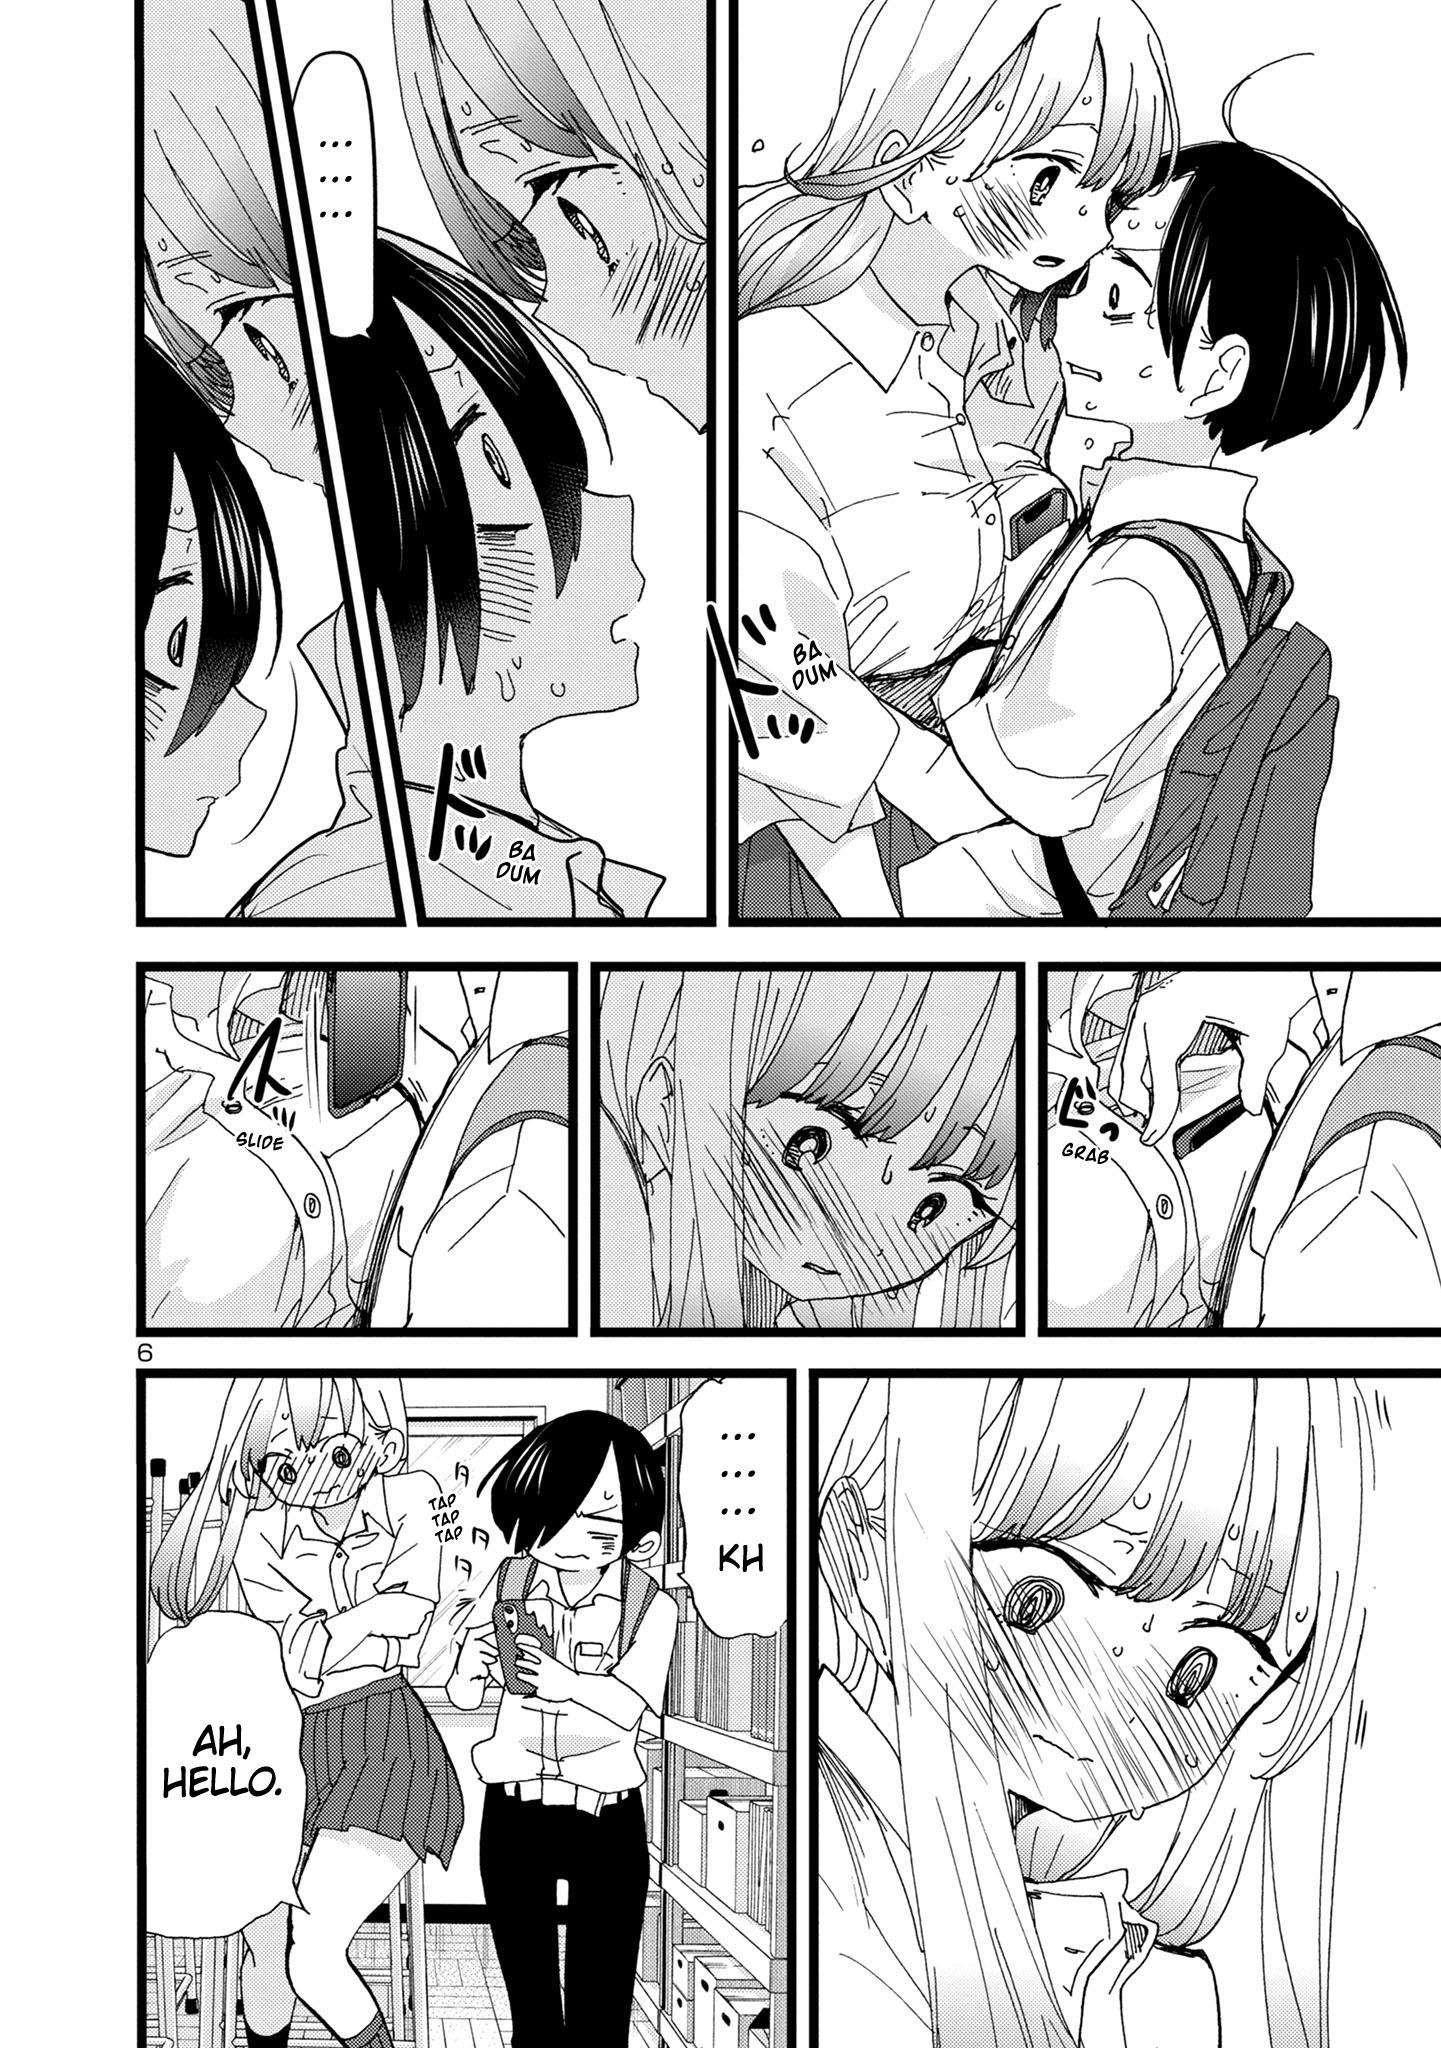 Boku no Kokoro no Yabai Yatsu Vol.9 Ch.114 Page 12 - Mangago